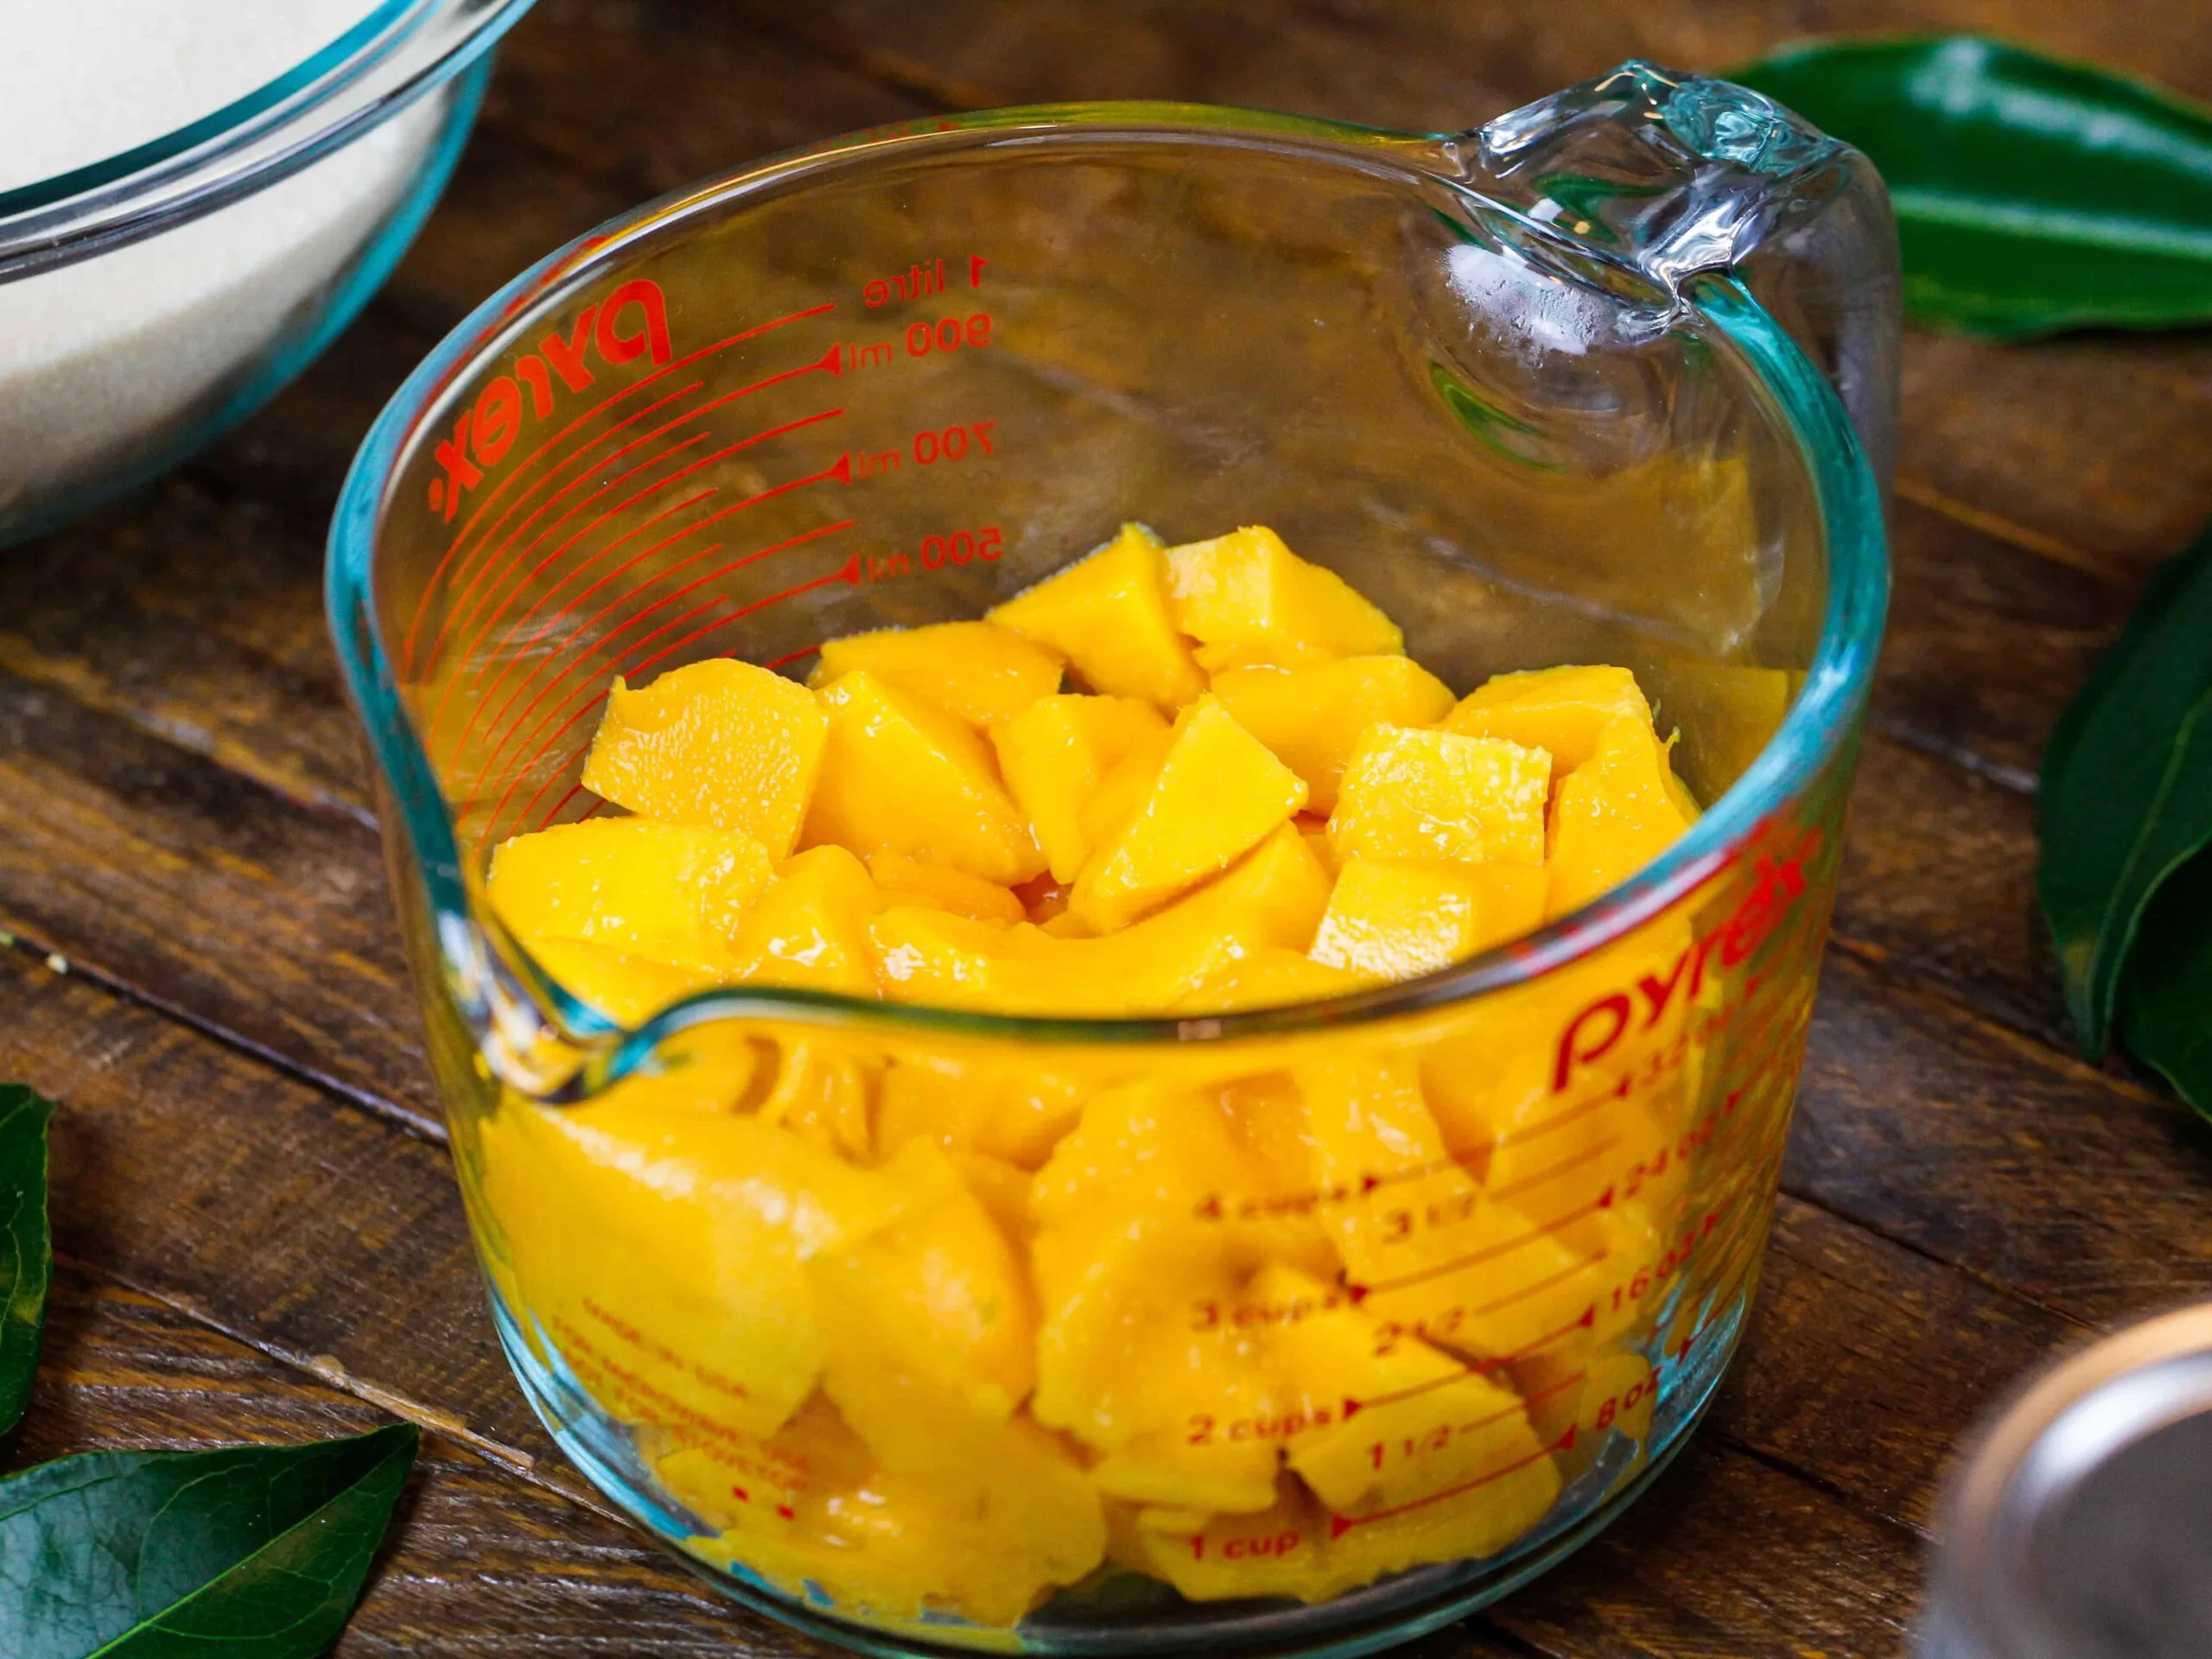 image of mango chunks cut up to be made into mango jam